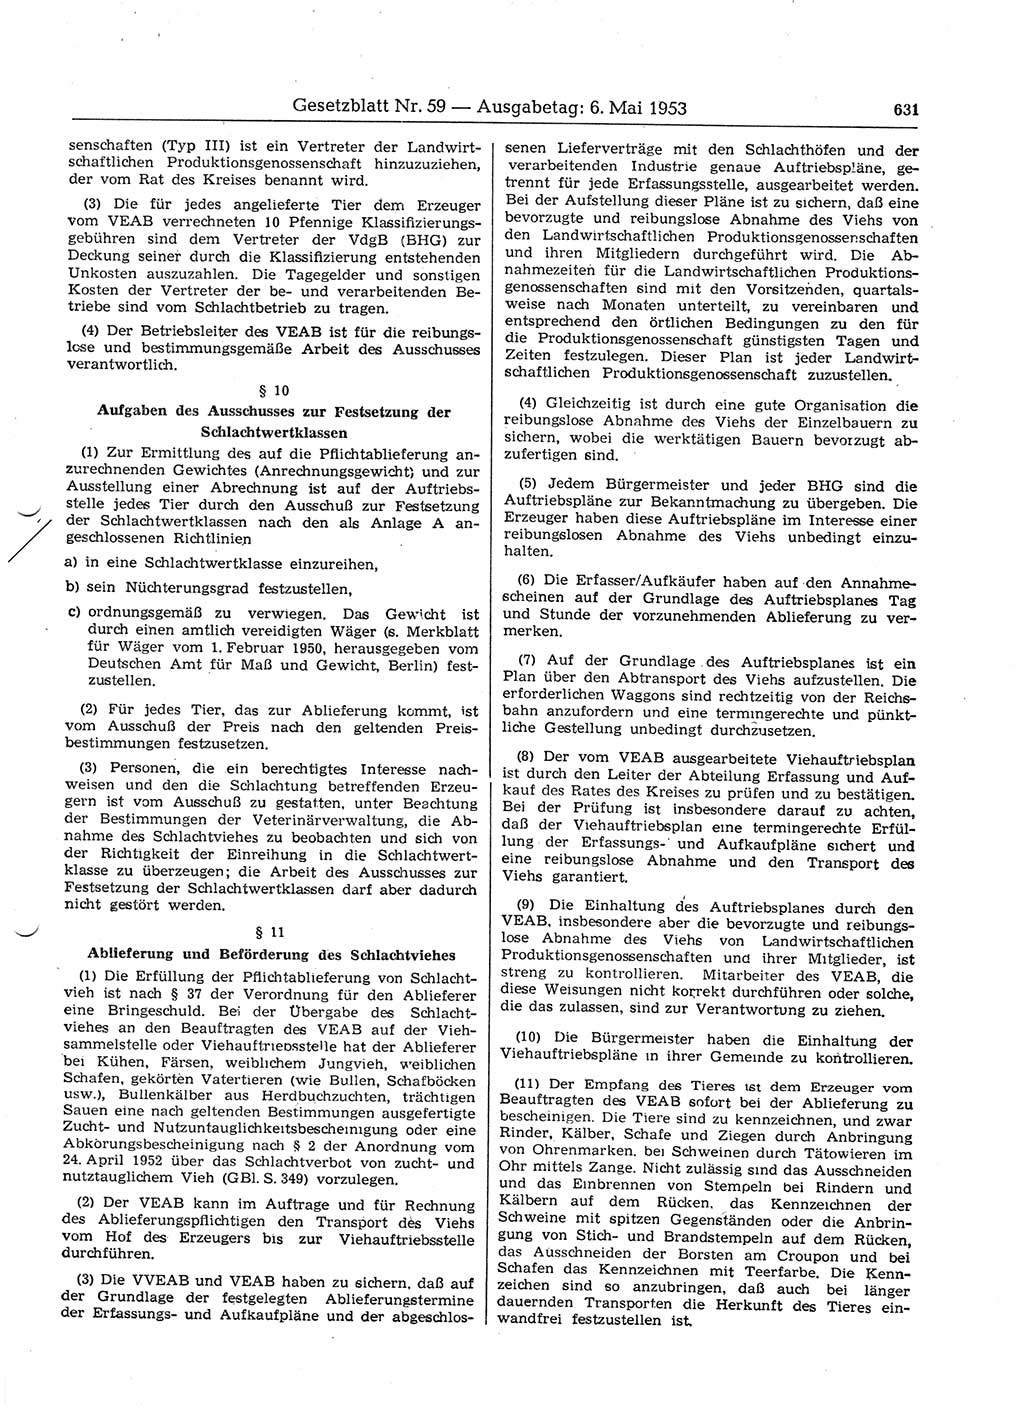 Gesetzblatt (GBl.) der Deutschen Demokratischen Republik (DDR) 1953, Seite 631 (GBl. DDR 1953, S. 631)